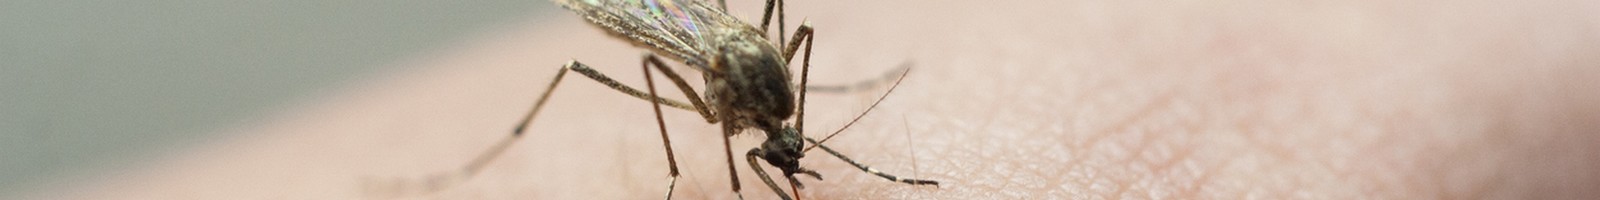 Bientôt une propagation croissante des maladies tropicales transmises par les moustiques en Europe?